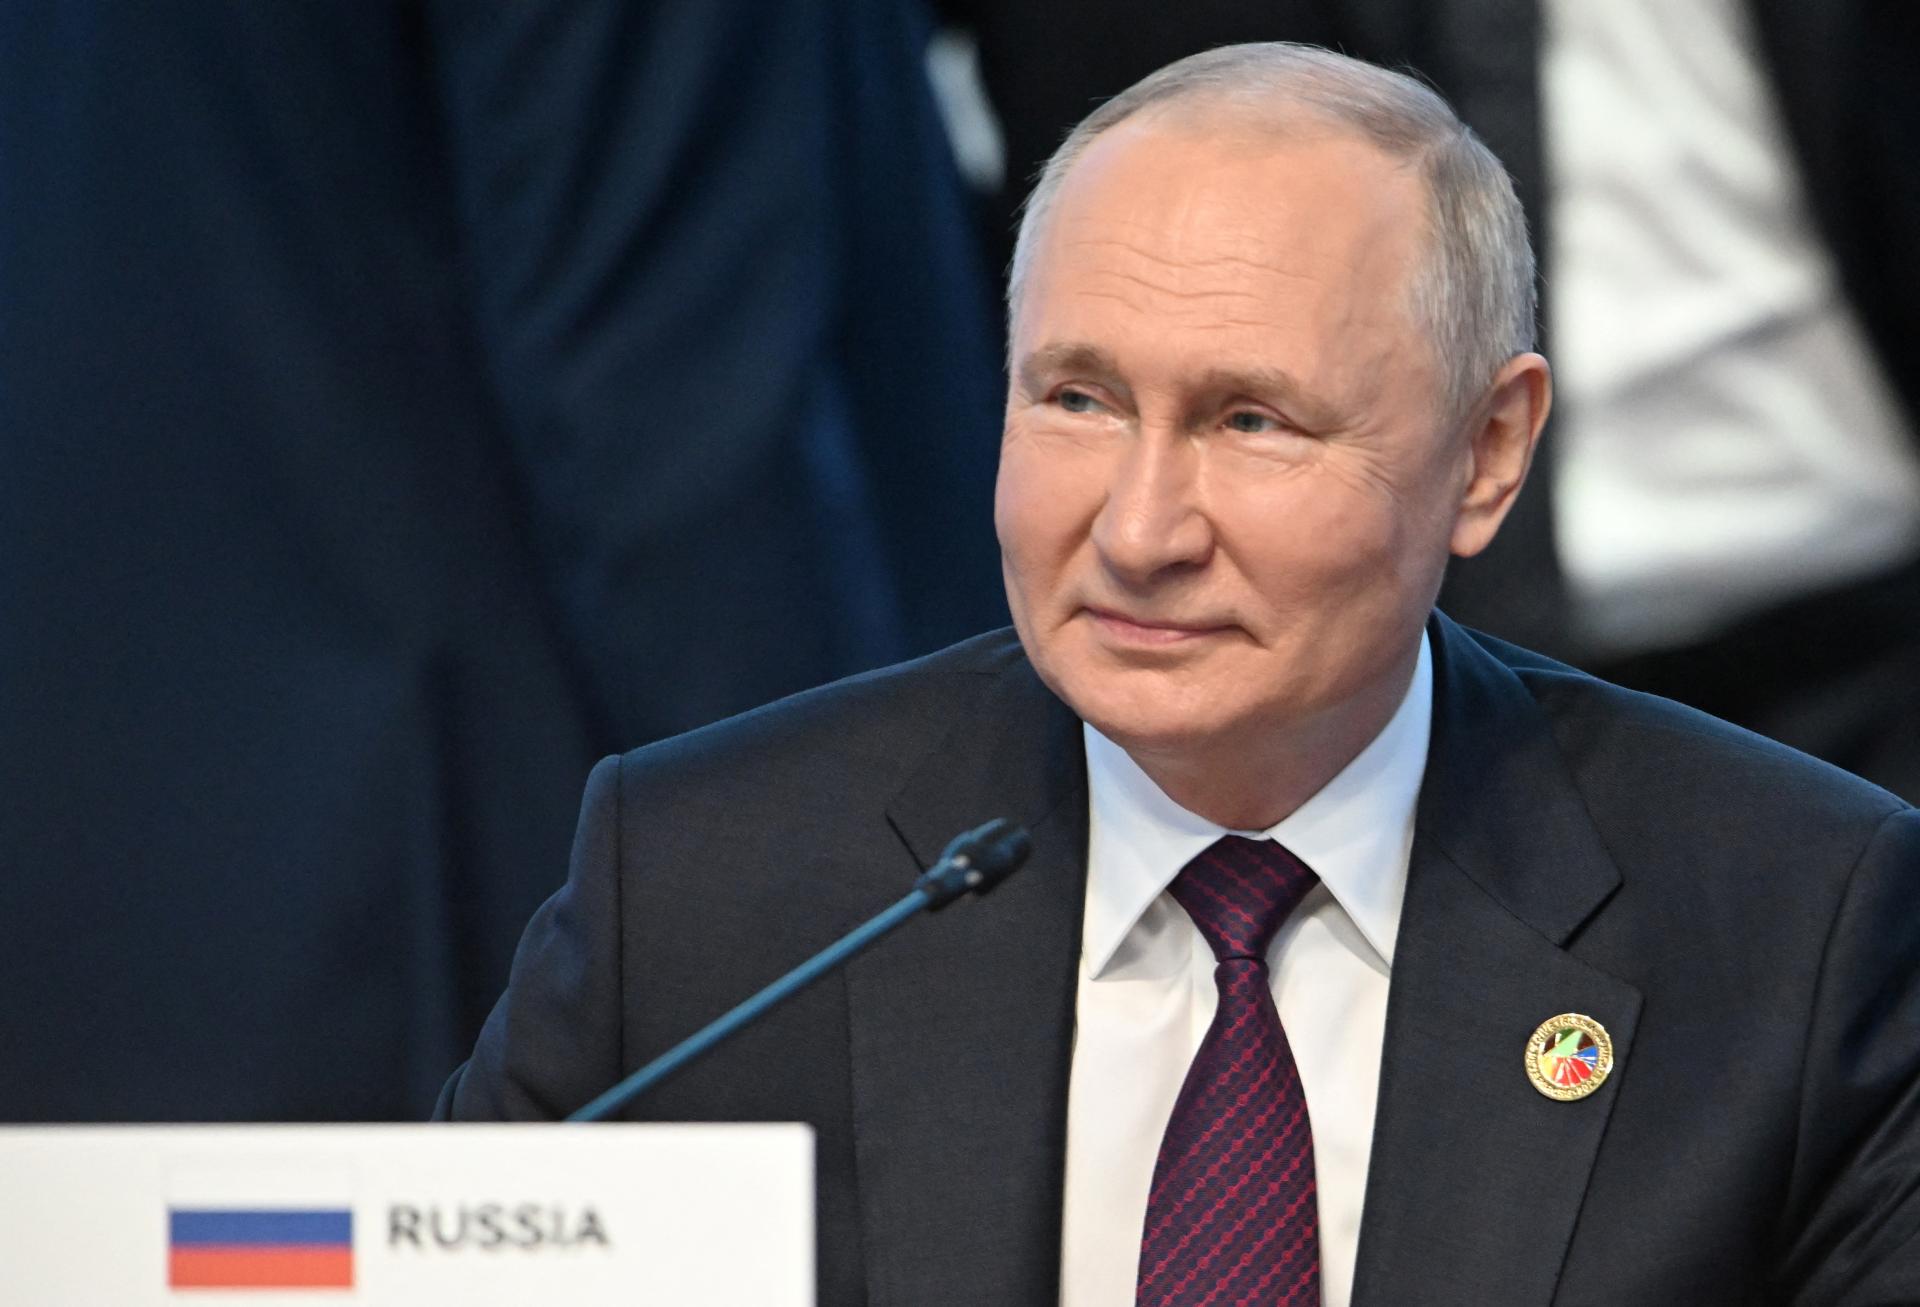 Rusko podľa Putina zvažuje návrhy afrických lídrov na ukončenie konfliktu na Ukrajine